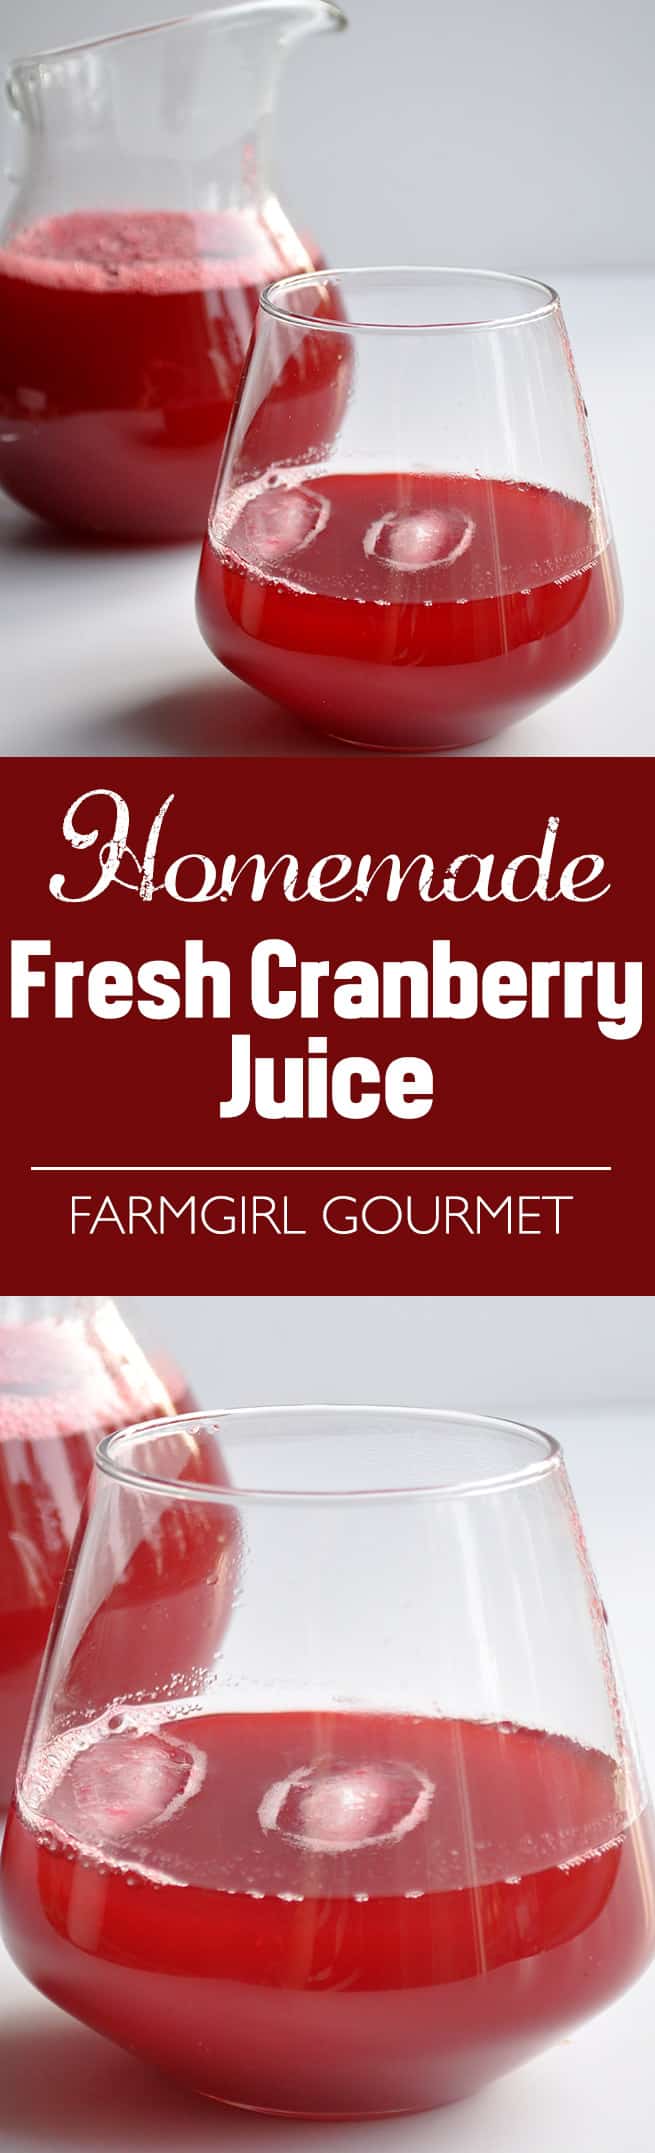 Homemade Fresh Cranberry Juice | farmgirlgourmet.com